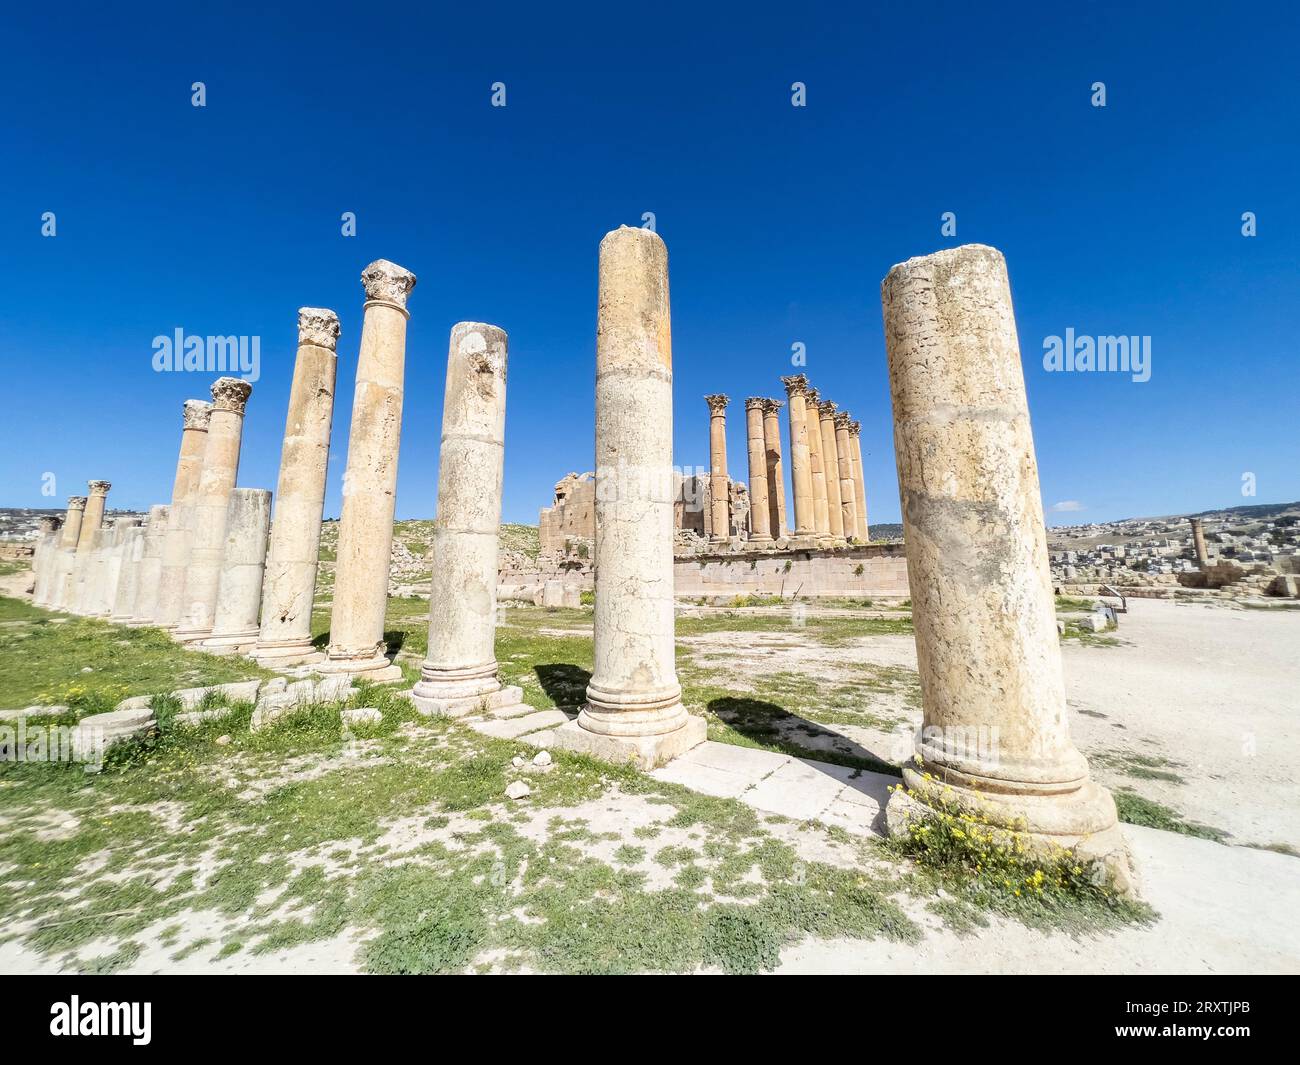 Des colonnes encadrent un bâtiment dans l'ancienne ville de Jerash, qui aurait été fondée en 331 av. J.-C. par Alexandre le Grand, Jerash, Jordanie, Moyen-Orient Banque D'Images